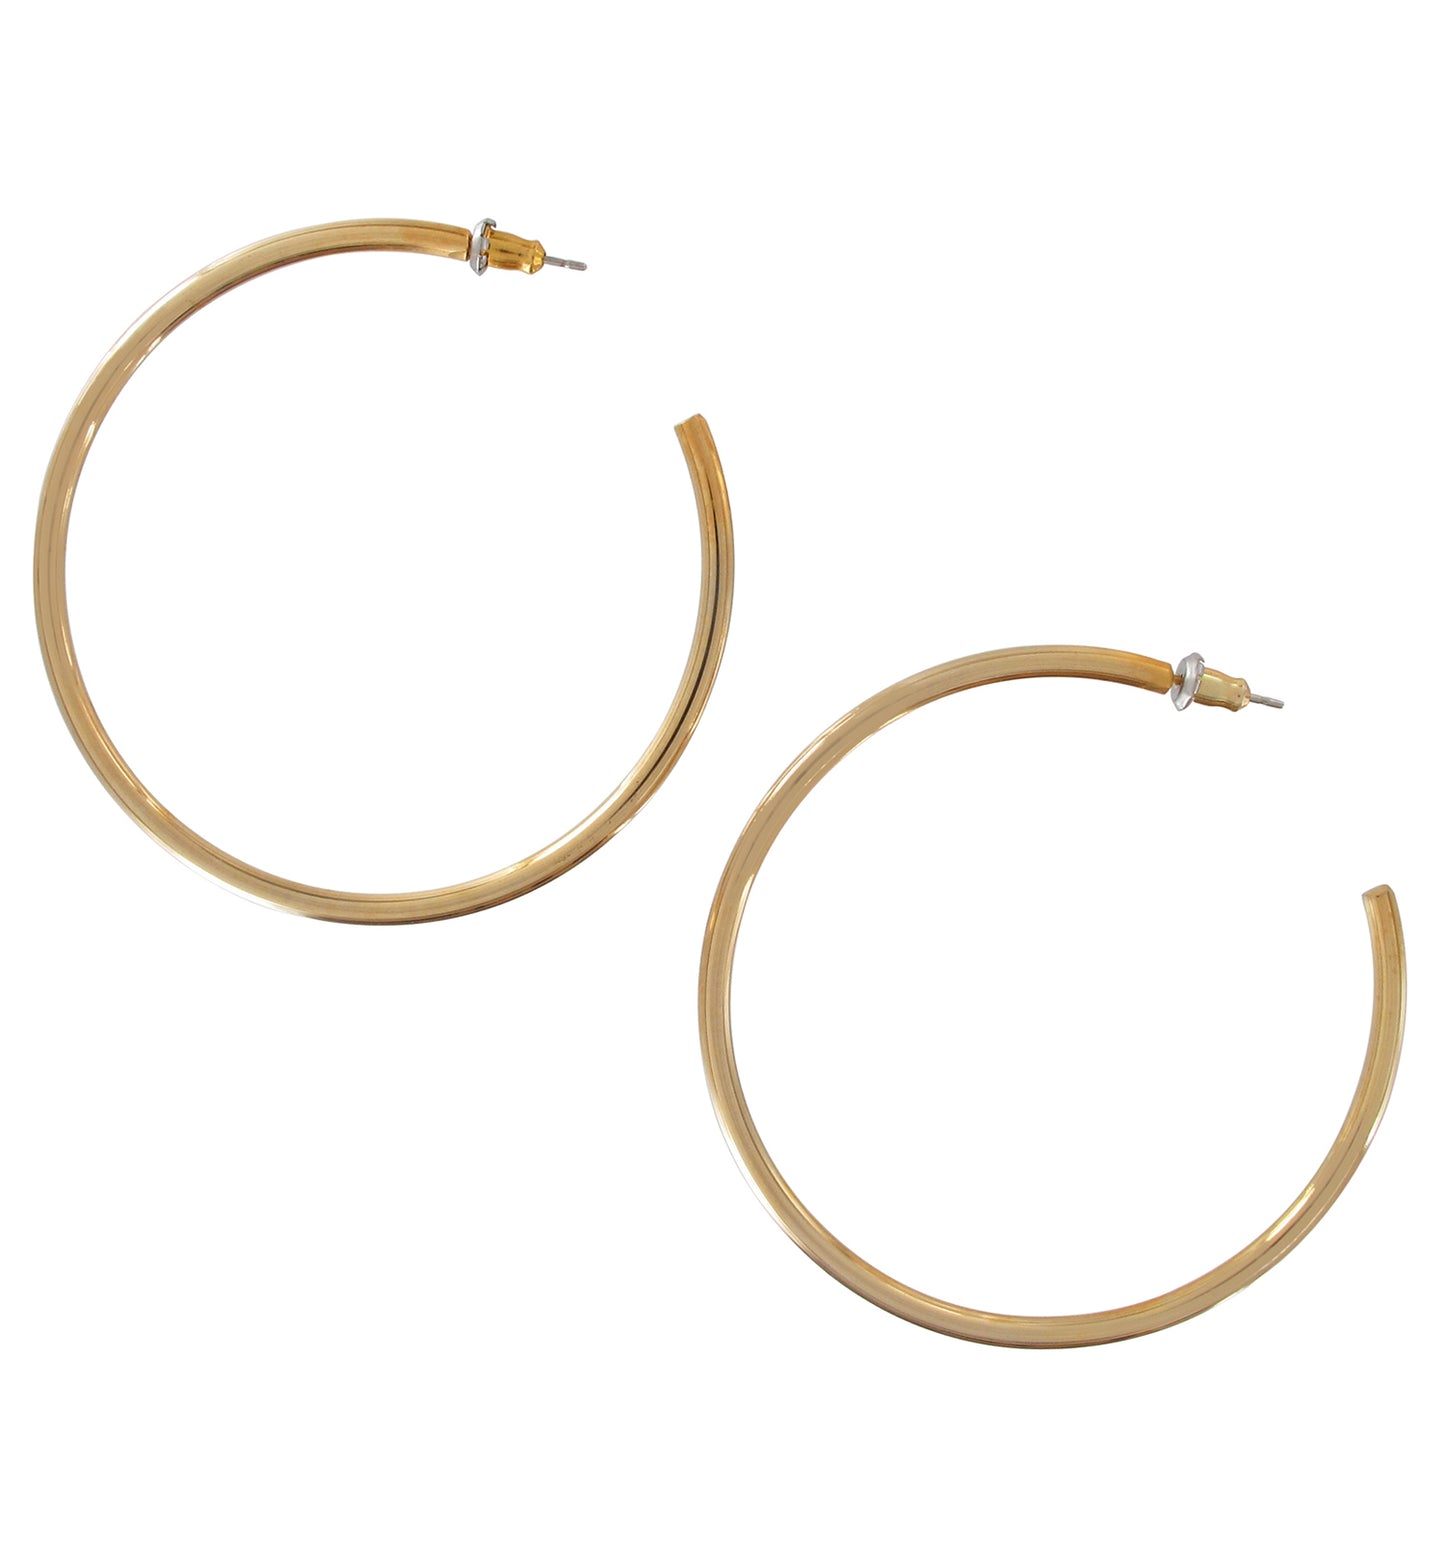 Gold Tone Plain Open Hoop Pierced Earrings 2 3/16"